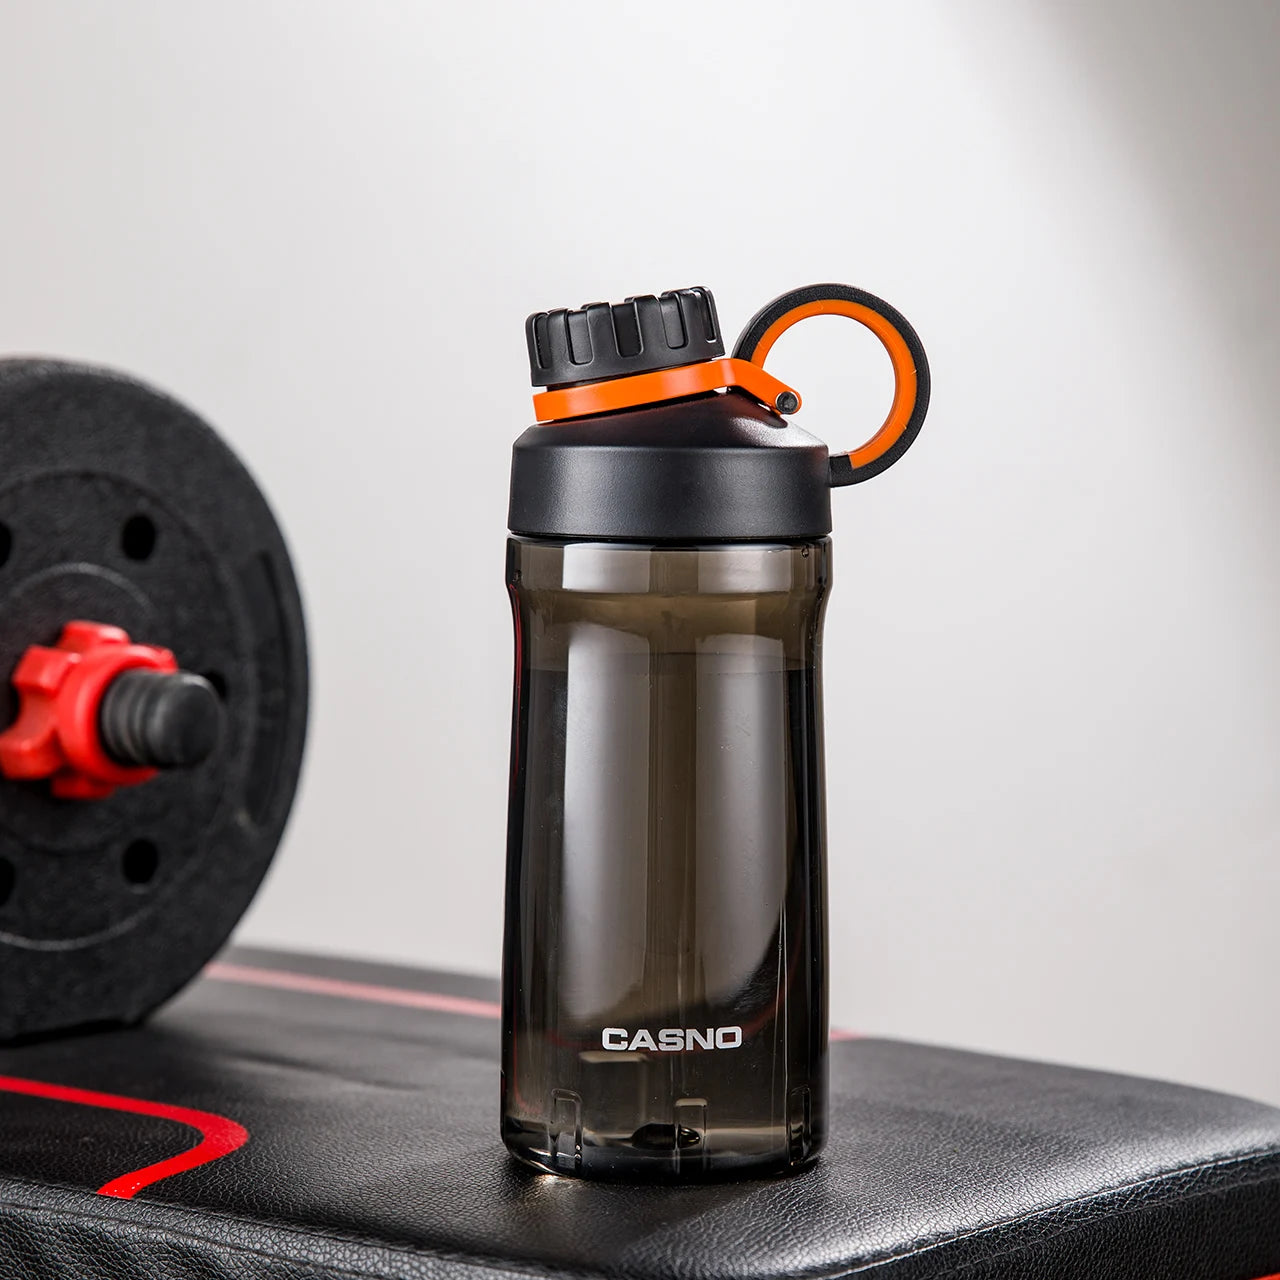 Eine schwarze, transparente Sporttrinkflasche auf einer Fitnessbank. Die Flasche hat einen schwarzen Schraubverschluss mit einem Henkel und ist mit dem Wort "SPORT" sowie der Marke "CASNO" beschriftet. Im Hintergrund ist eine Hantel mit roten Details zu sehen.